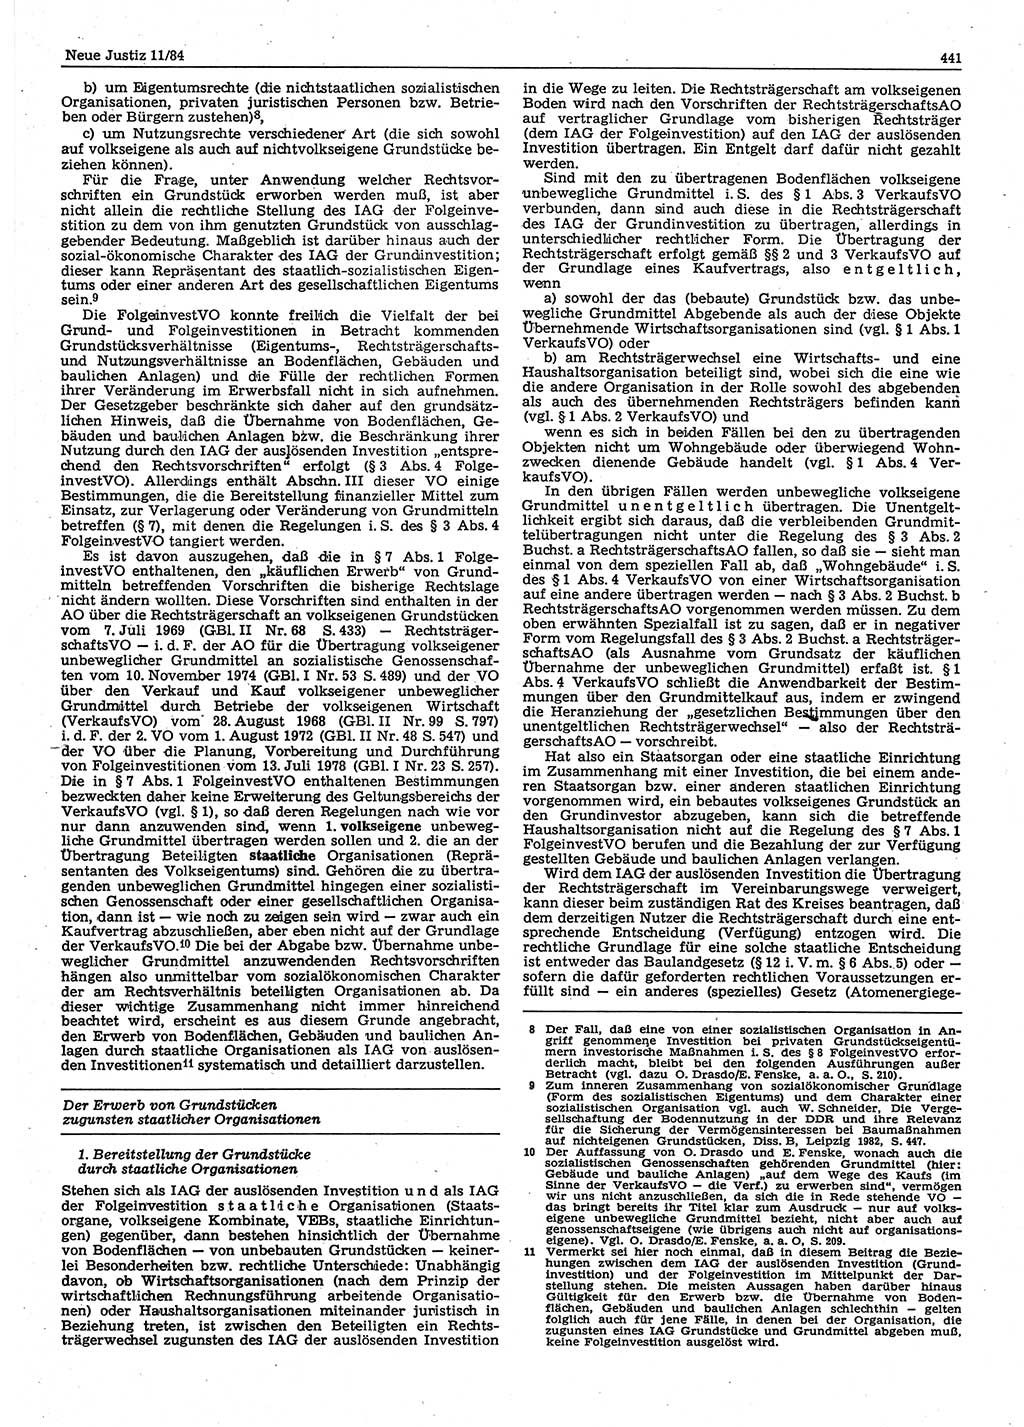 Neue Justiz (NJ), Zeitschrift für sozialistisches Recht und Gesetzlichkeit [Deutsche Demokratische Republik (DDR)], 38. Jahrgang 1984, Seite 441 (NJ DDR 1984, S. 441)